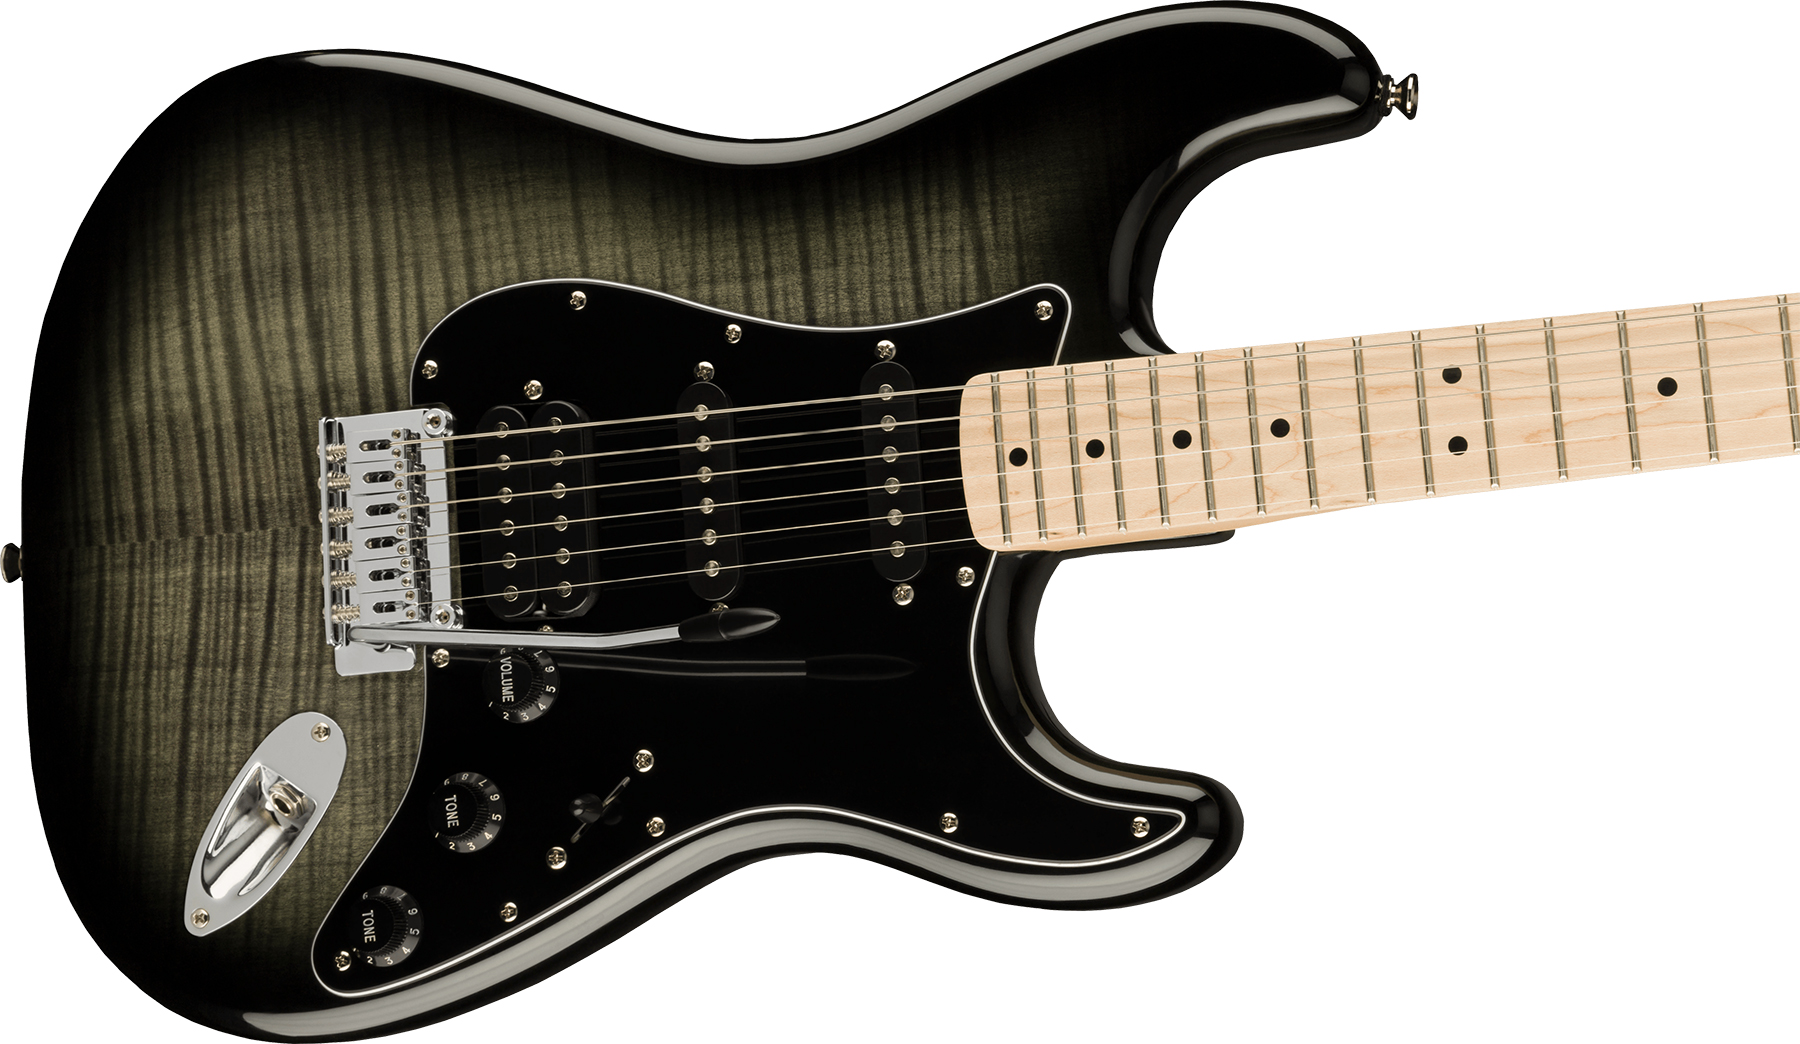 Squier Strat Affinity Fmt Hss 2021 Trem Mn - Black Burst - Str shape electric guitar - Variation 2